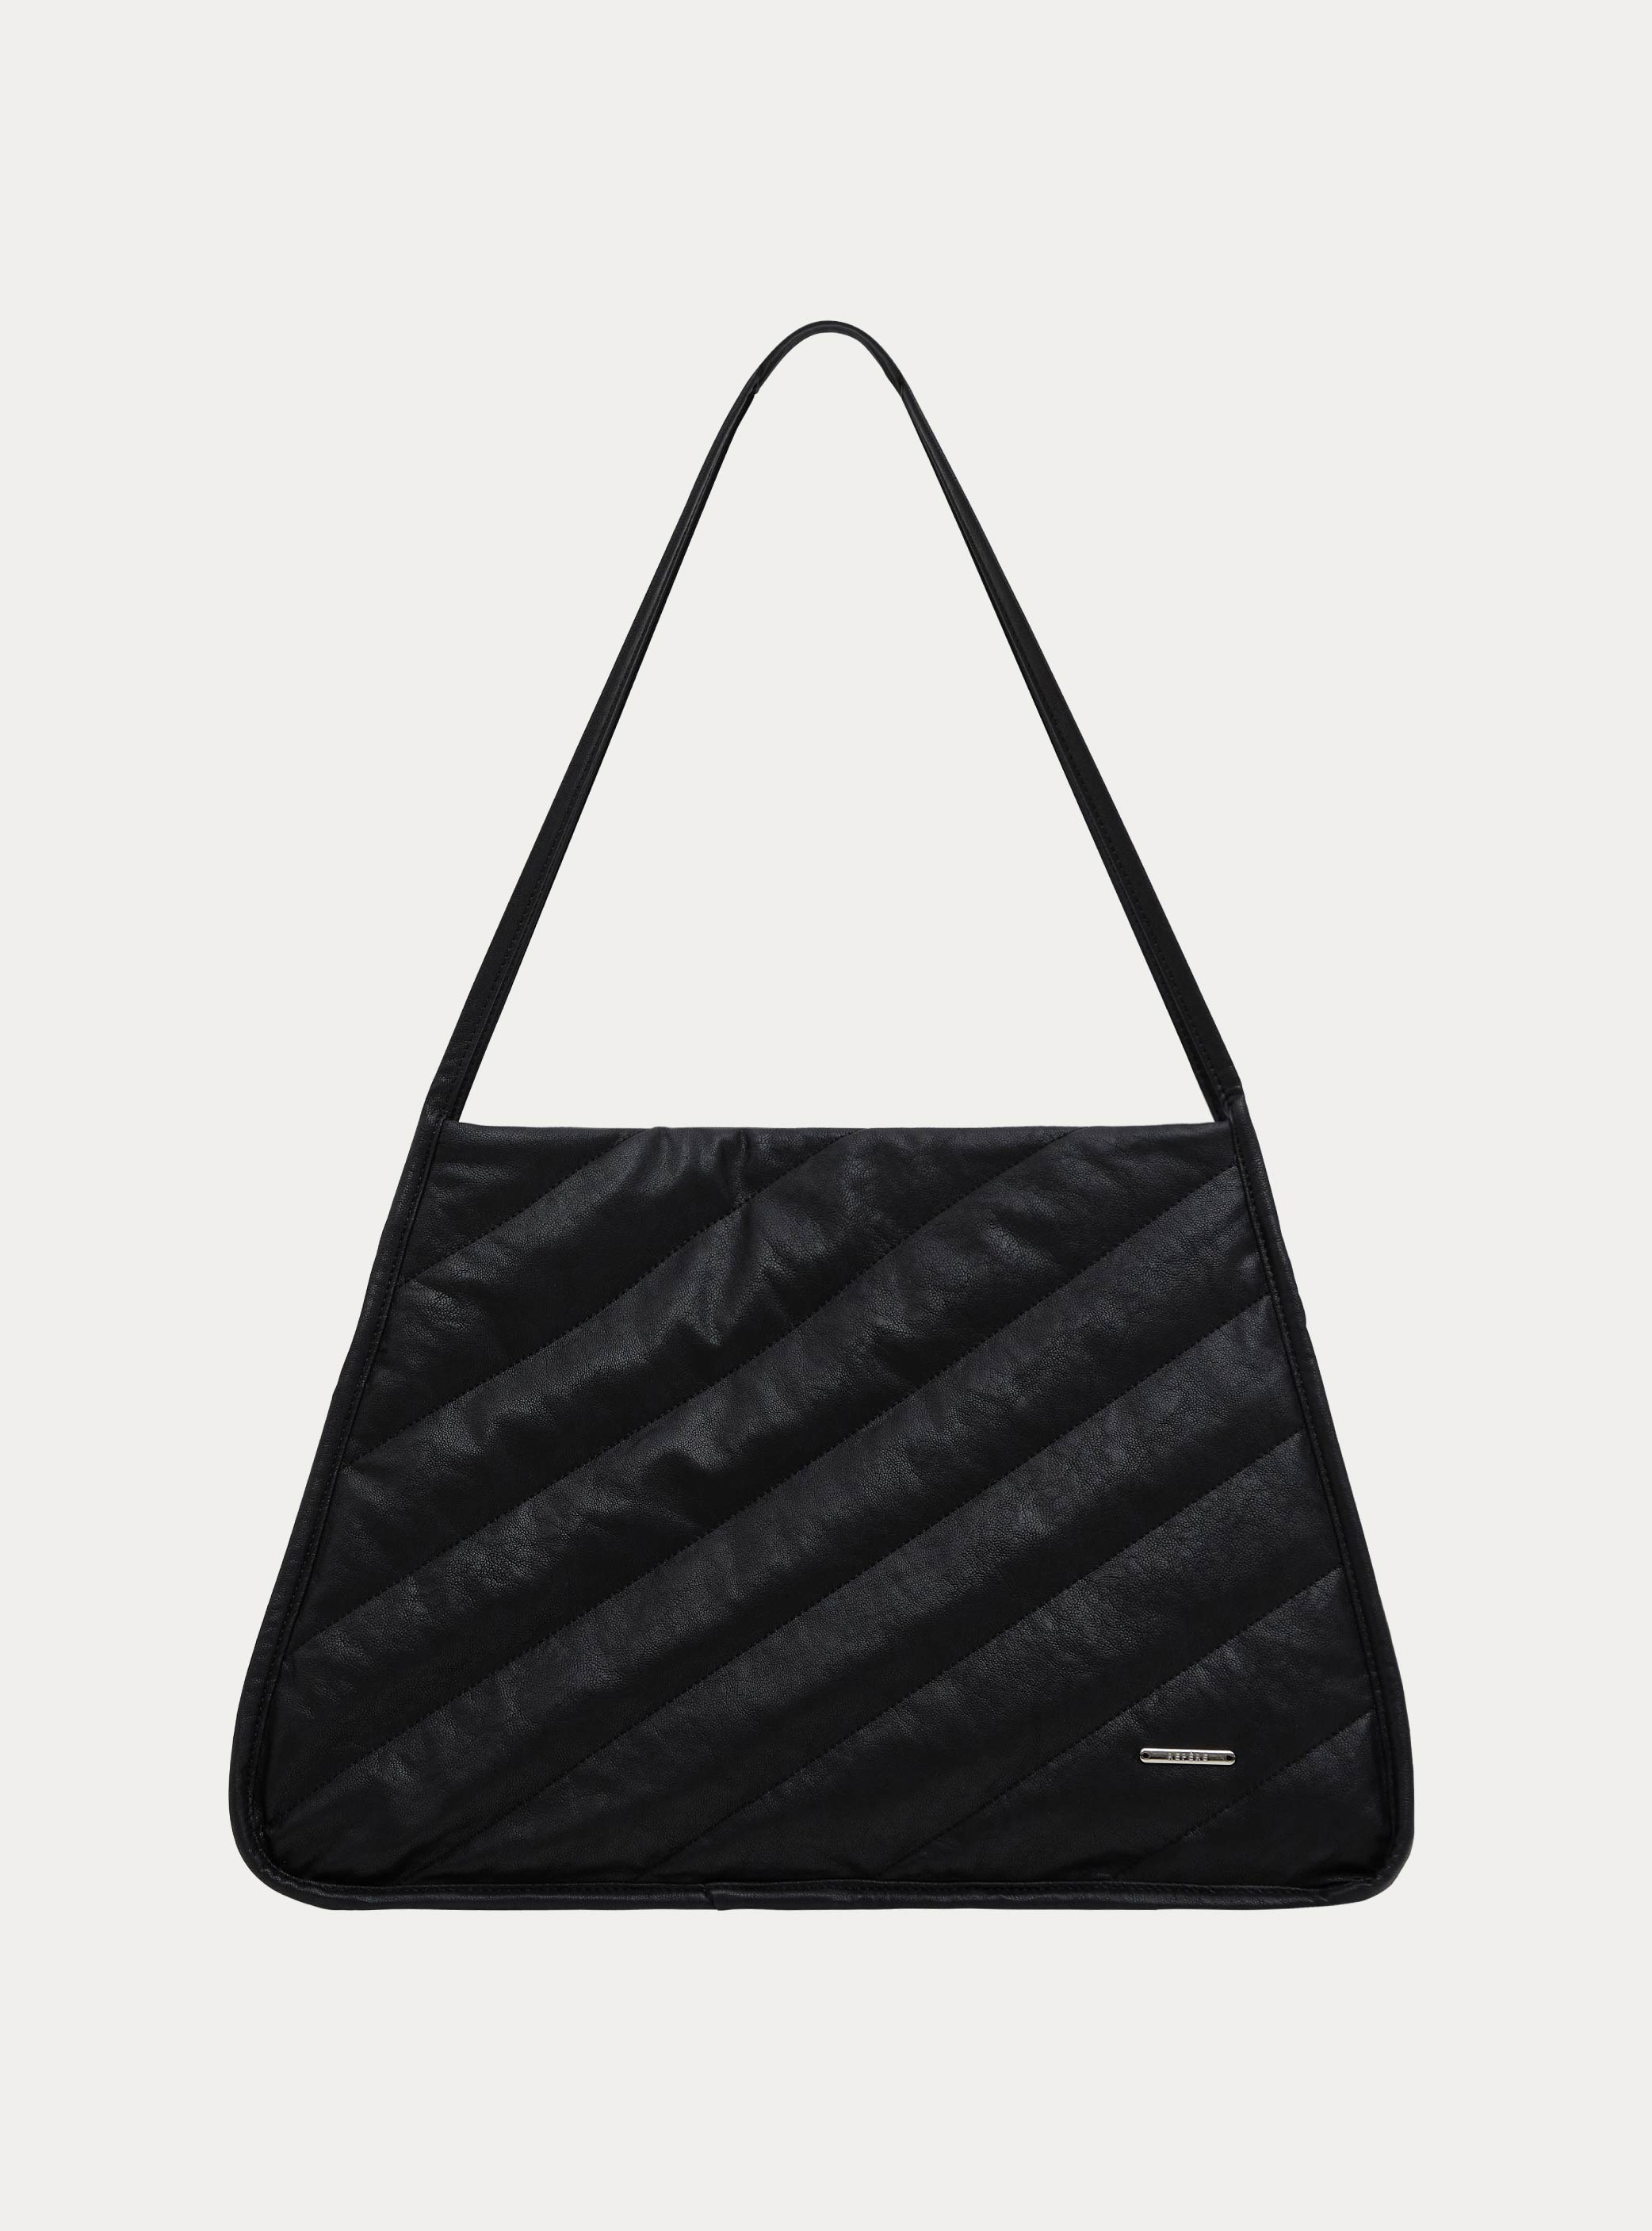 이그리트 레더 토트백  Ygritte leather tote bag (2color)